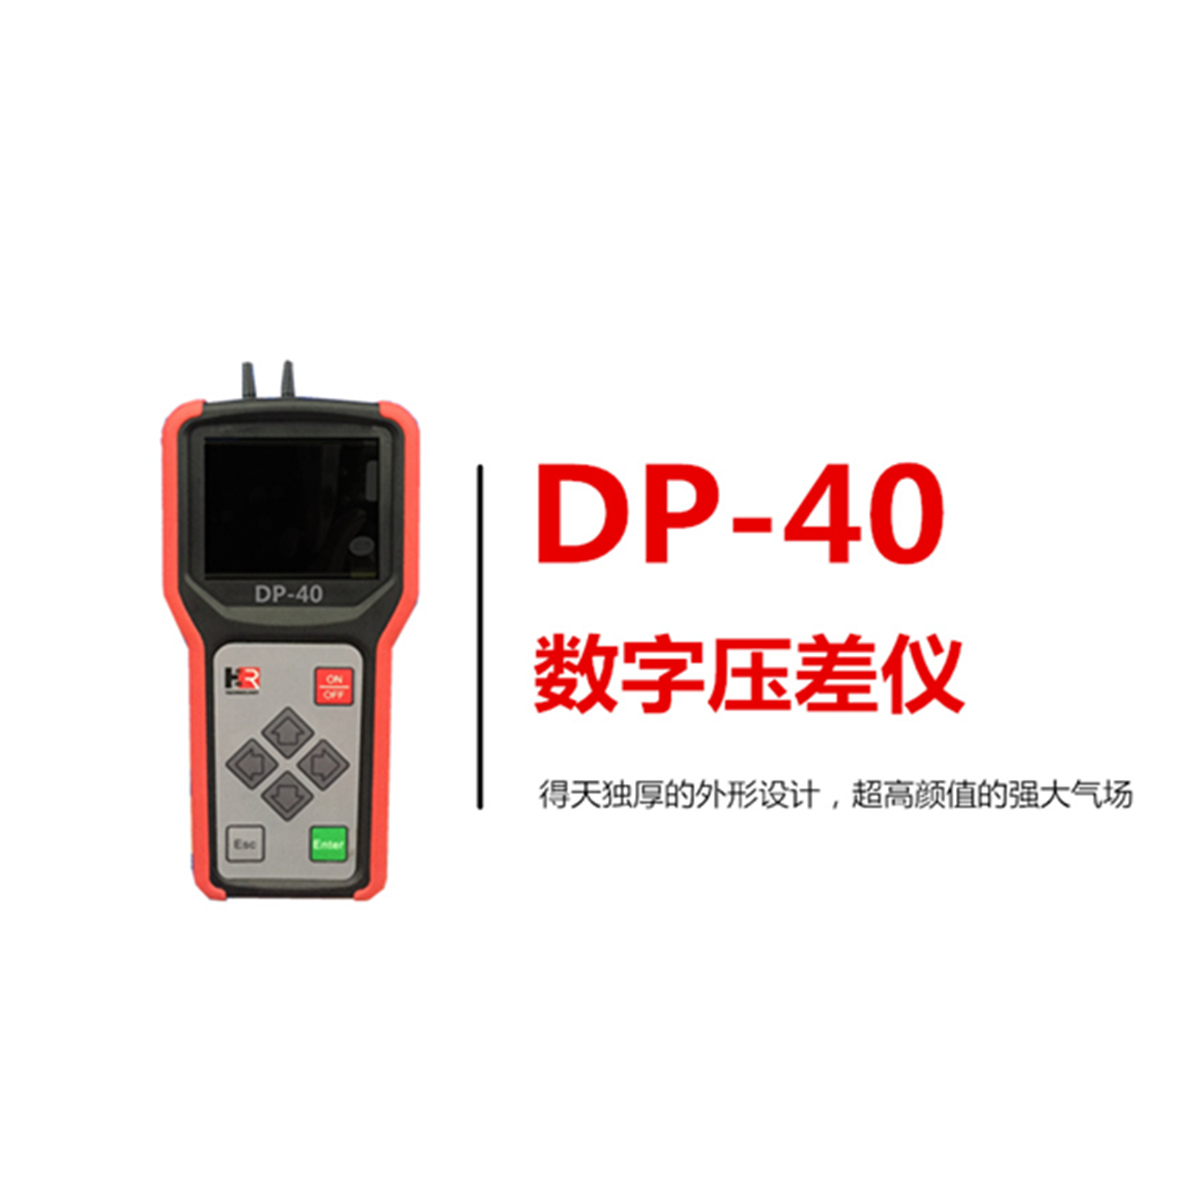 【皇冠游戏(中国)有限公司官网科技】DP-40压差仪，给你点“颜色”瞧瞧！